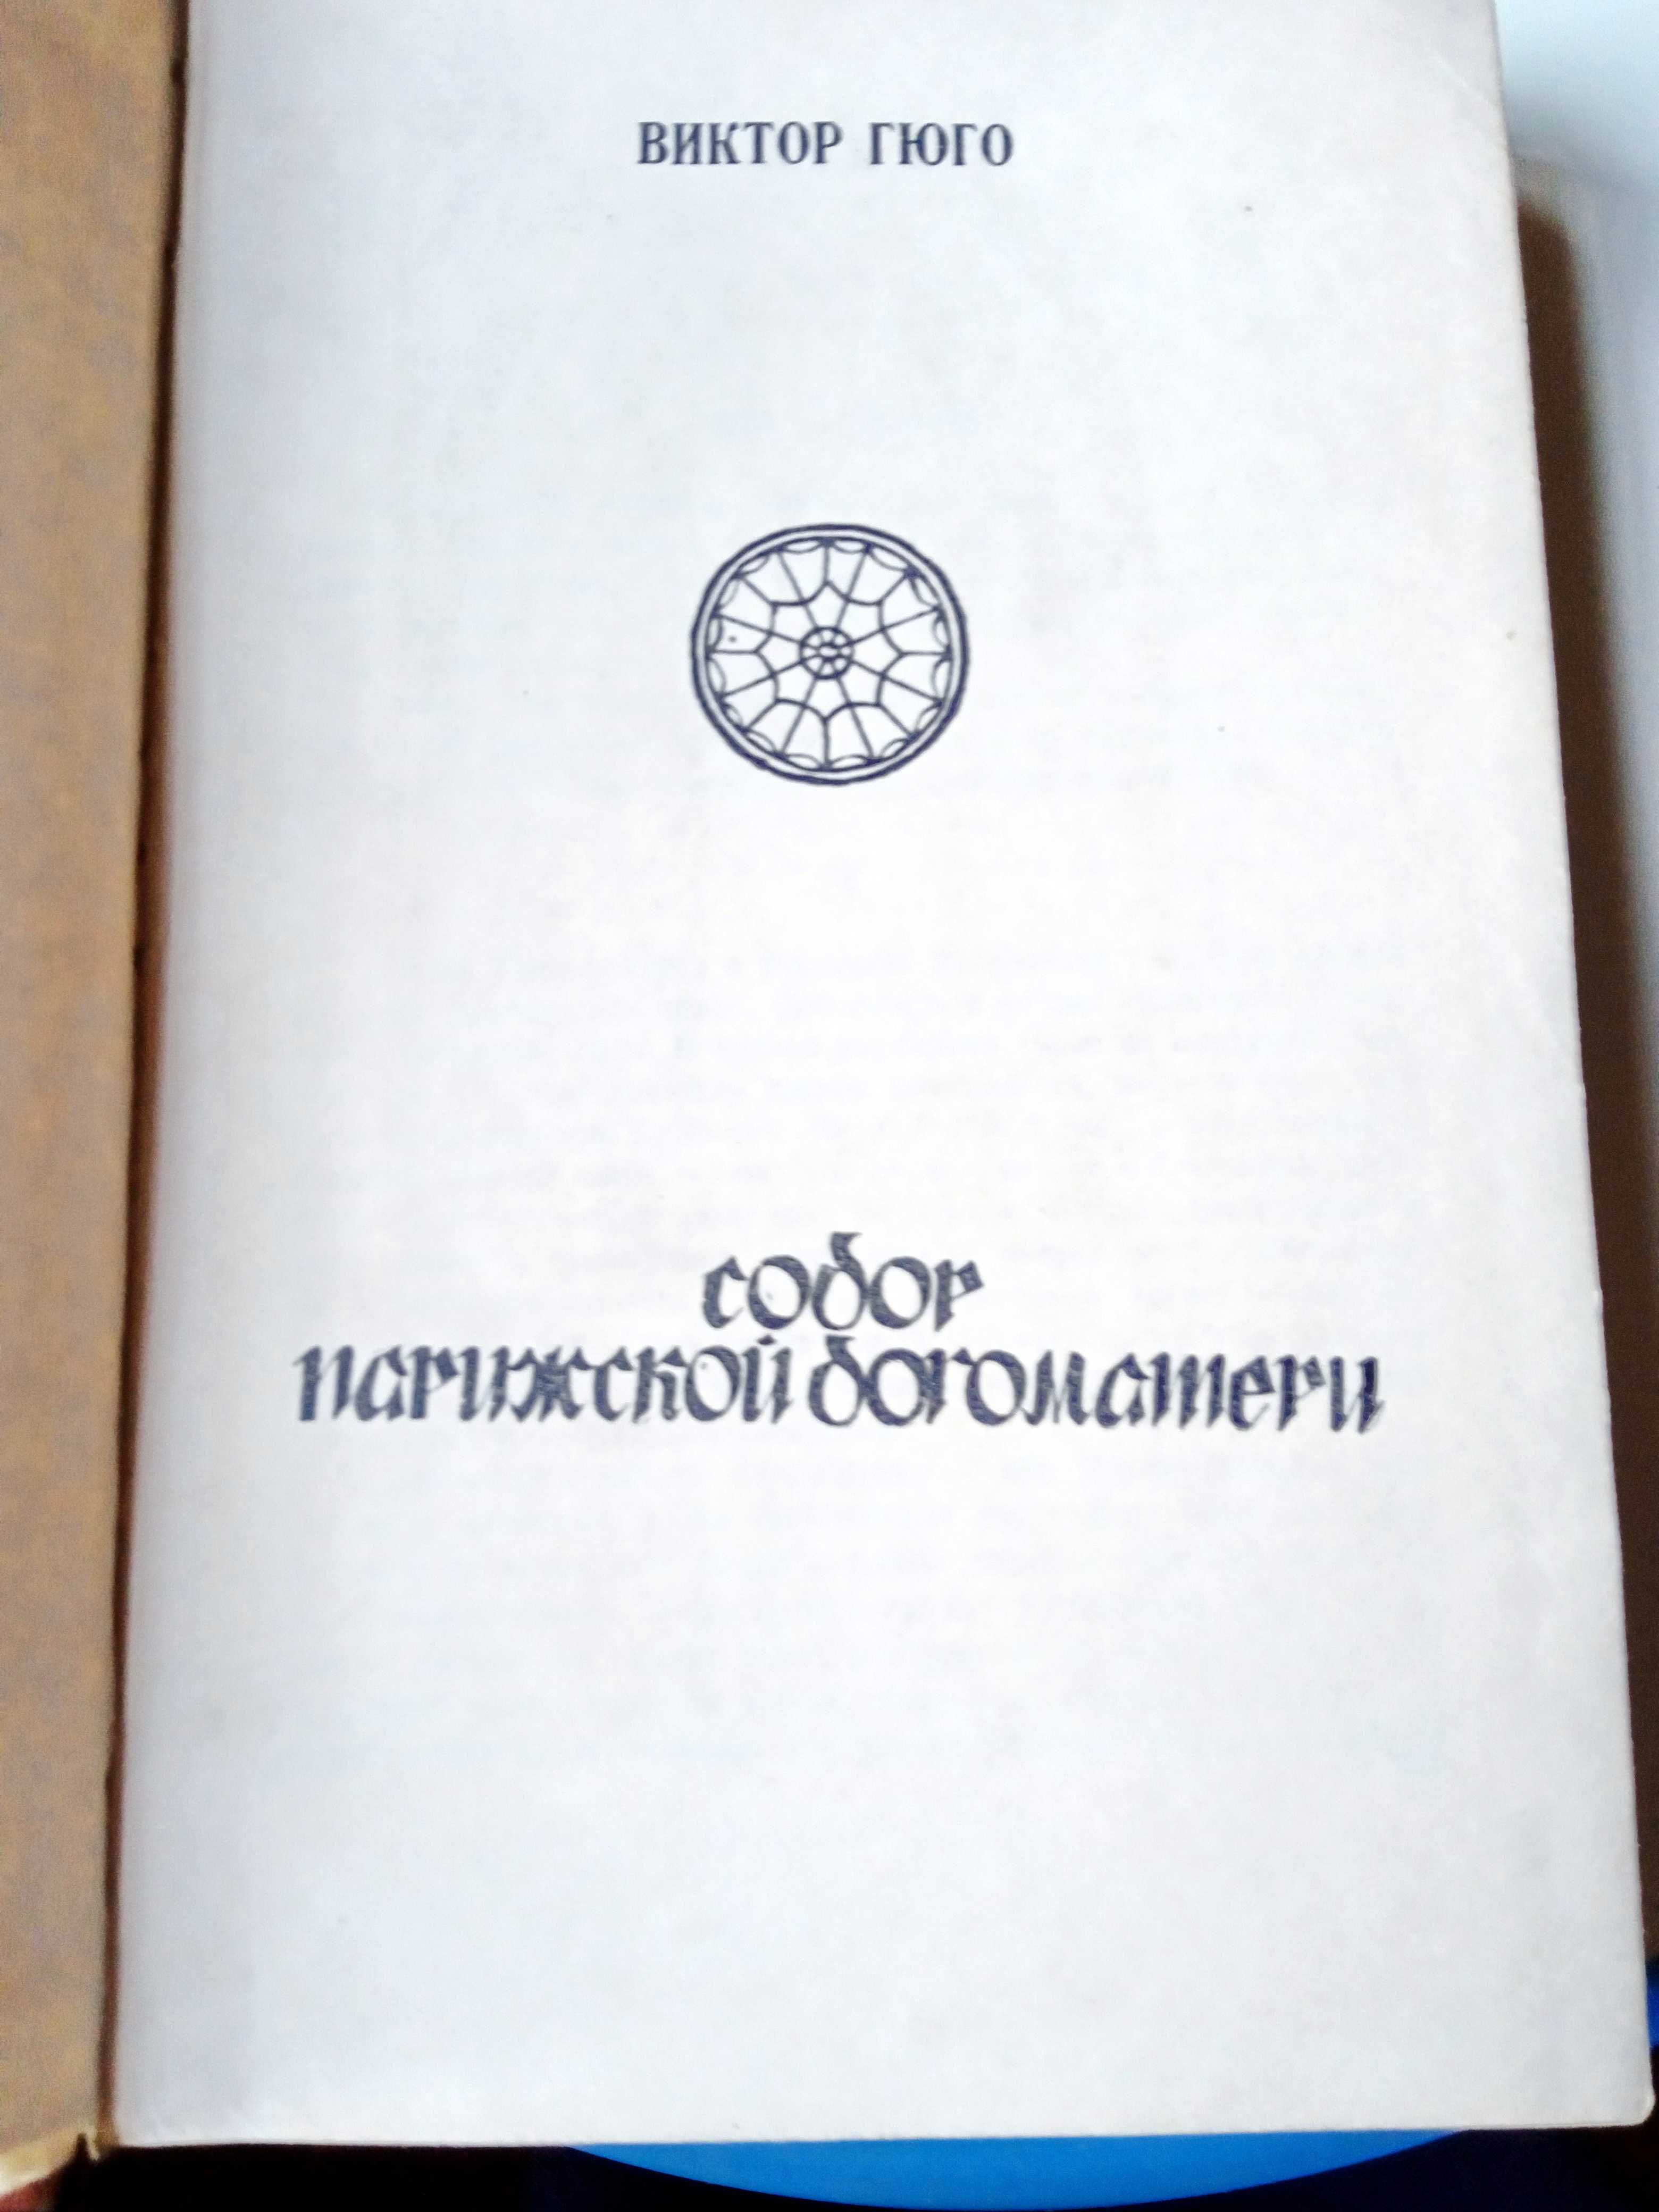 Книга В. Гюго  Собор Парижской Богоматери. 1972